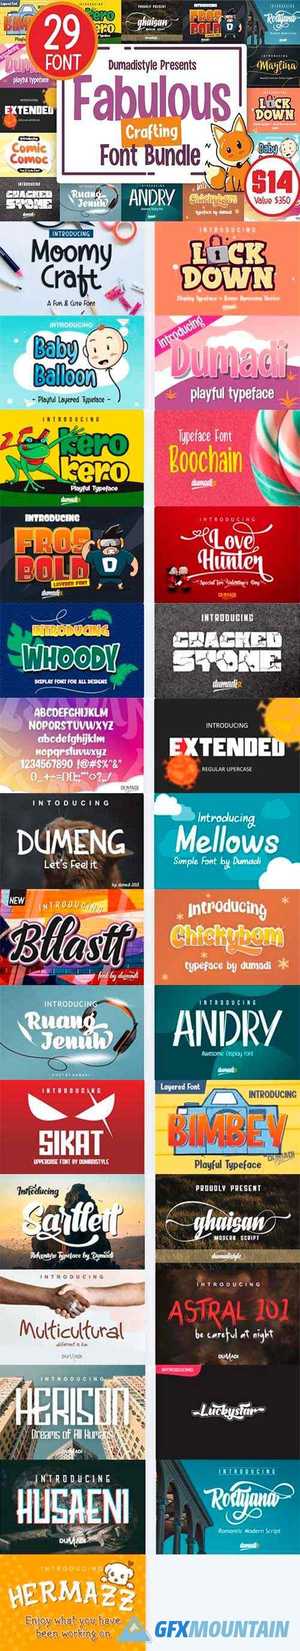 Fabulous Font Bundle - 29 Premium Fonts